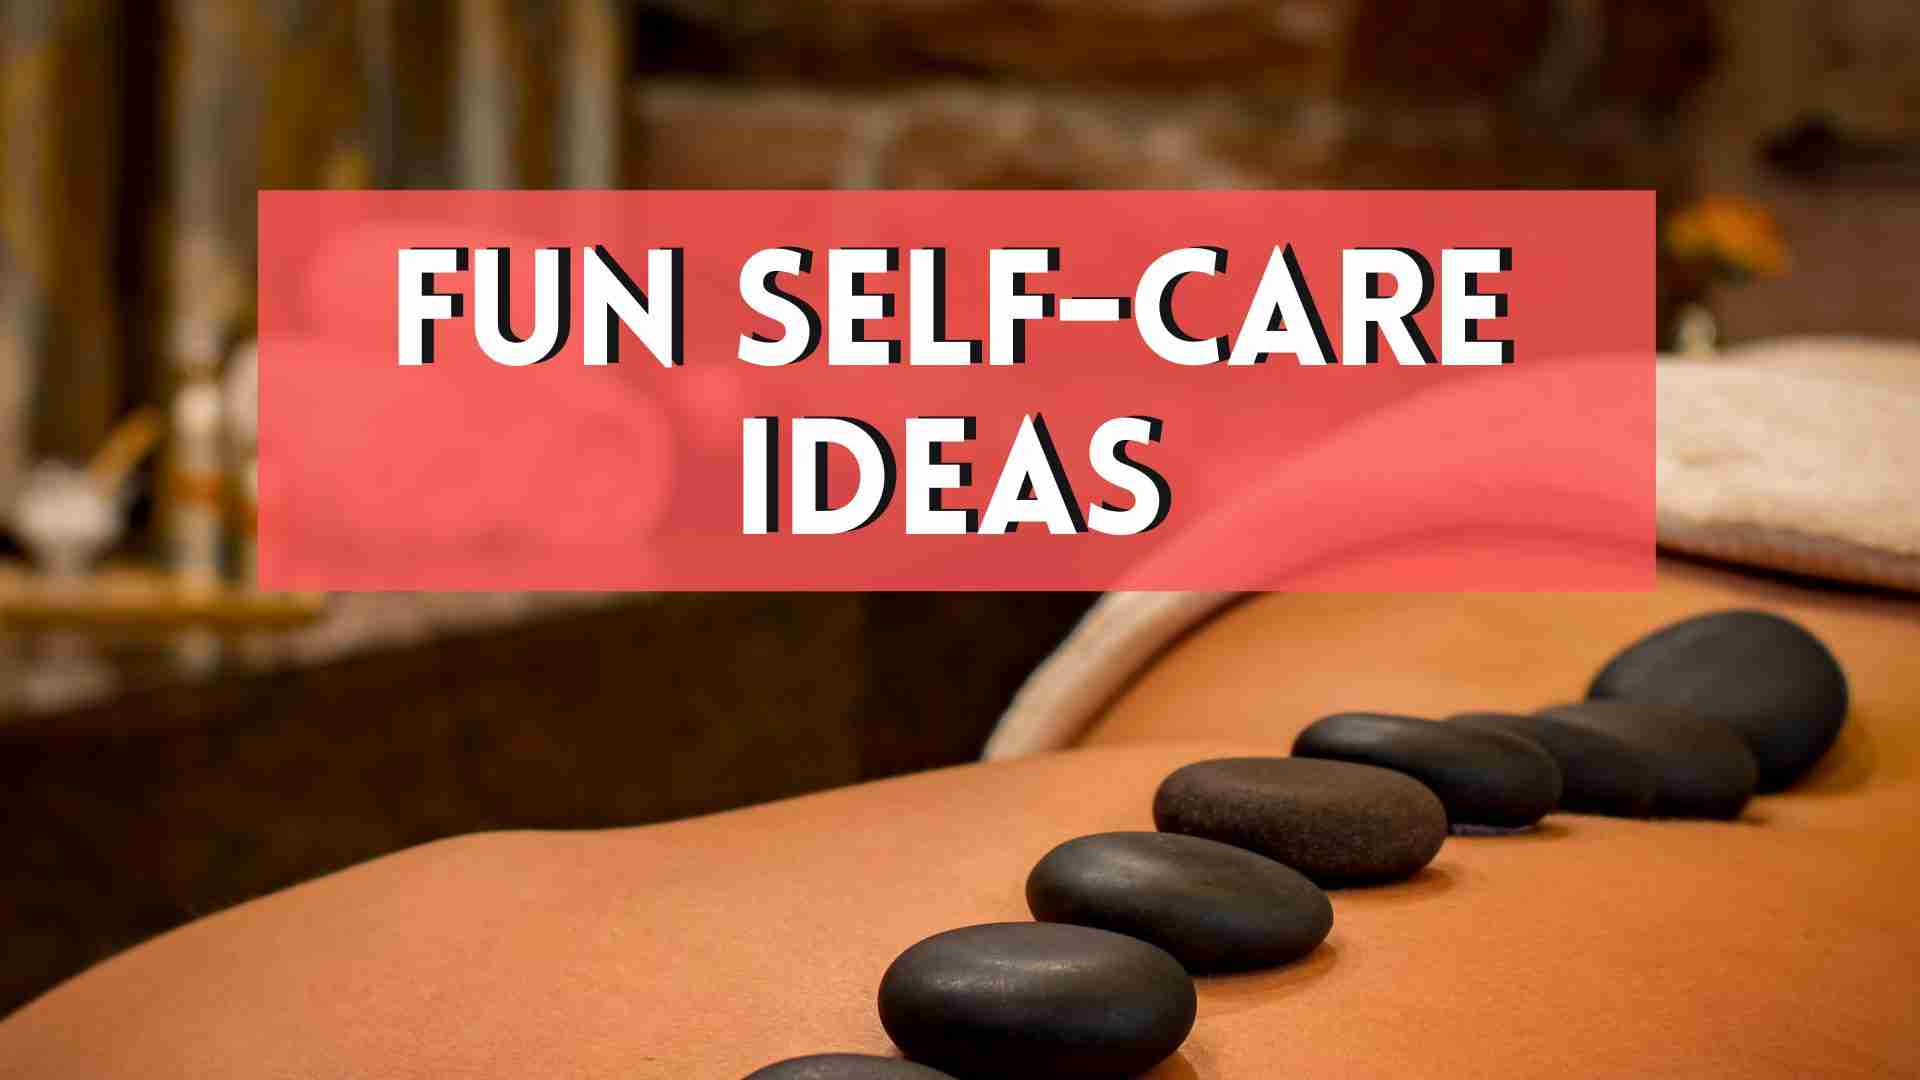 Fun Self-care ideas, person getting a massage